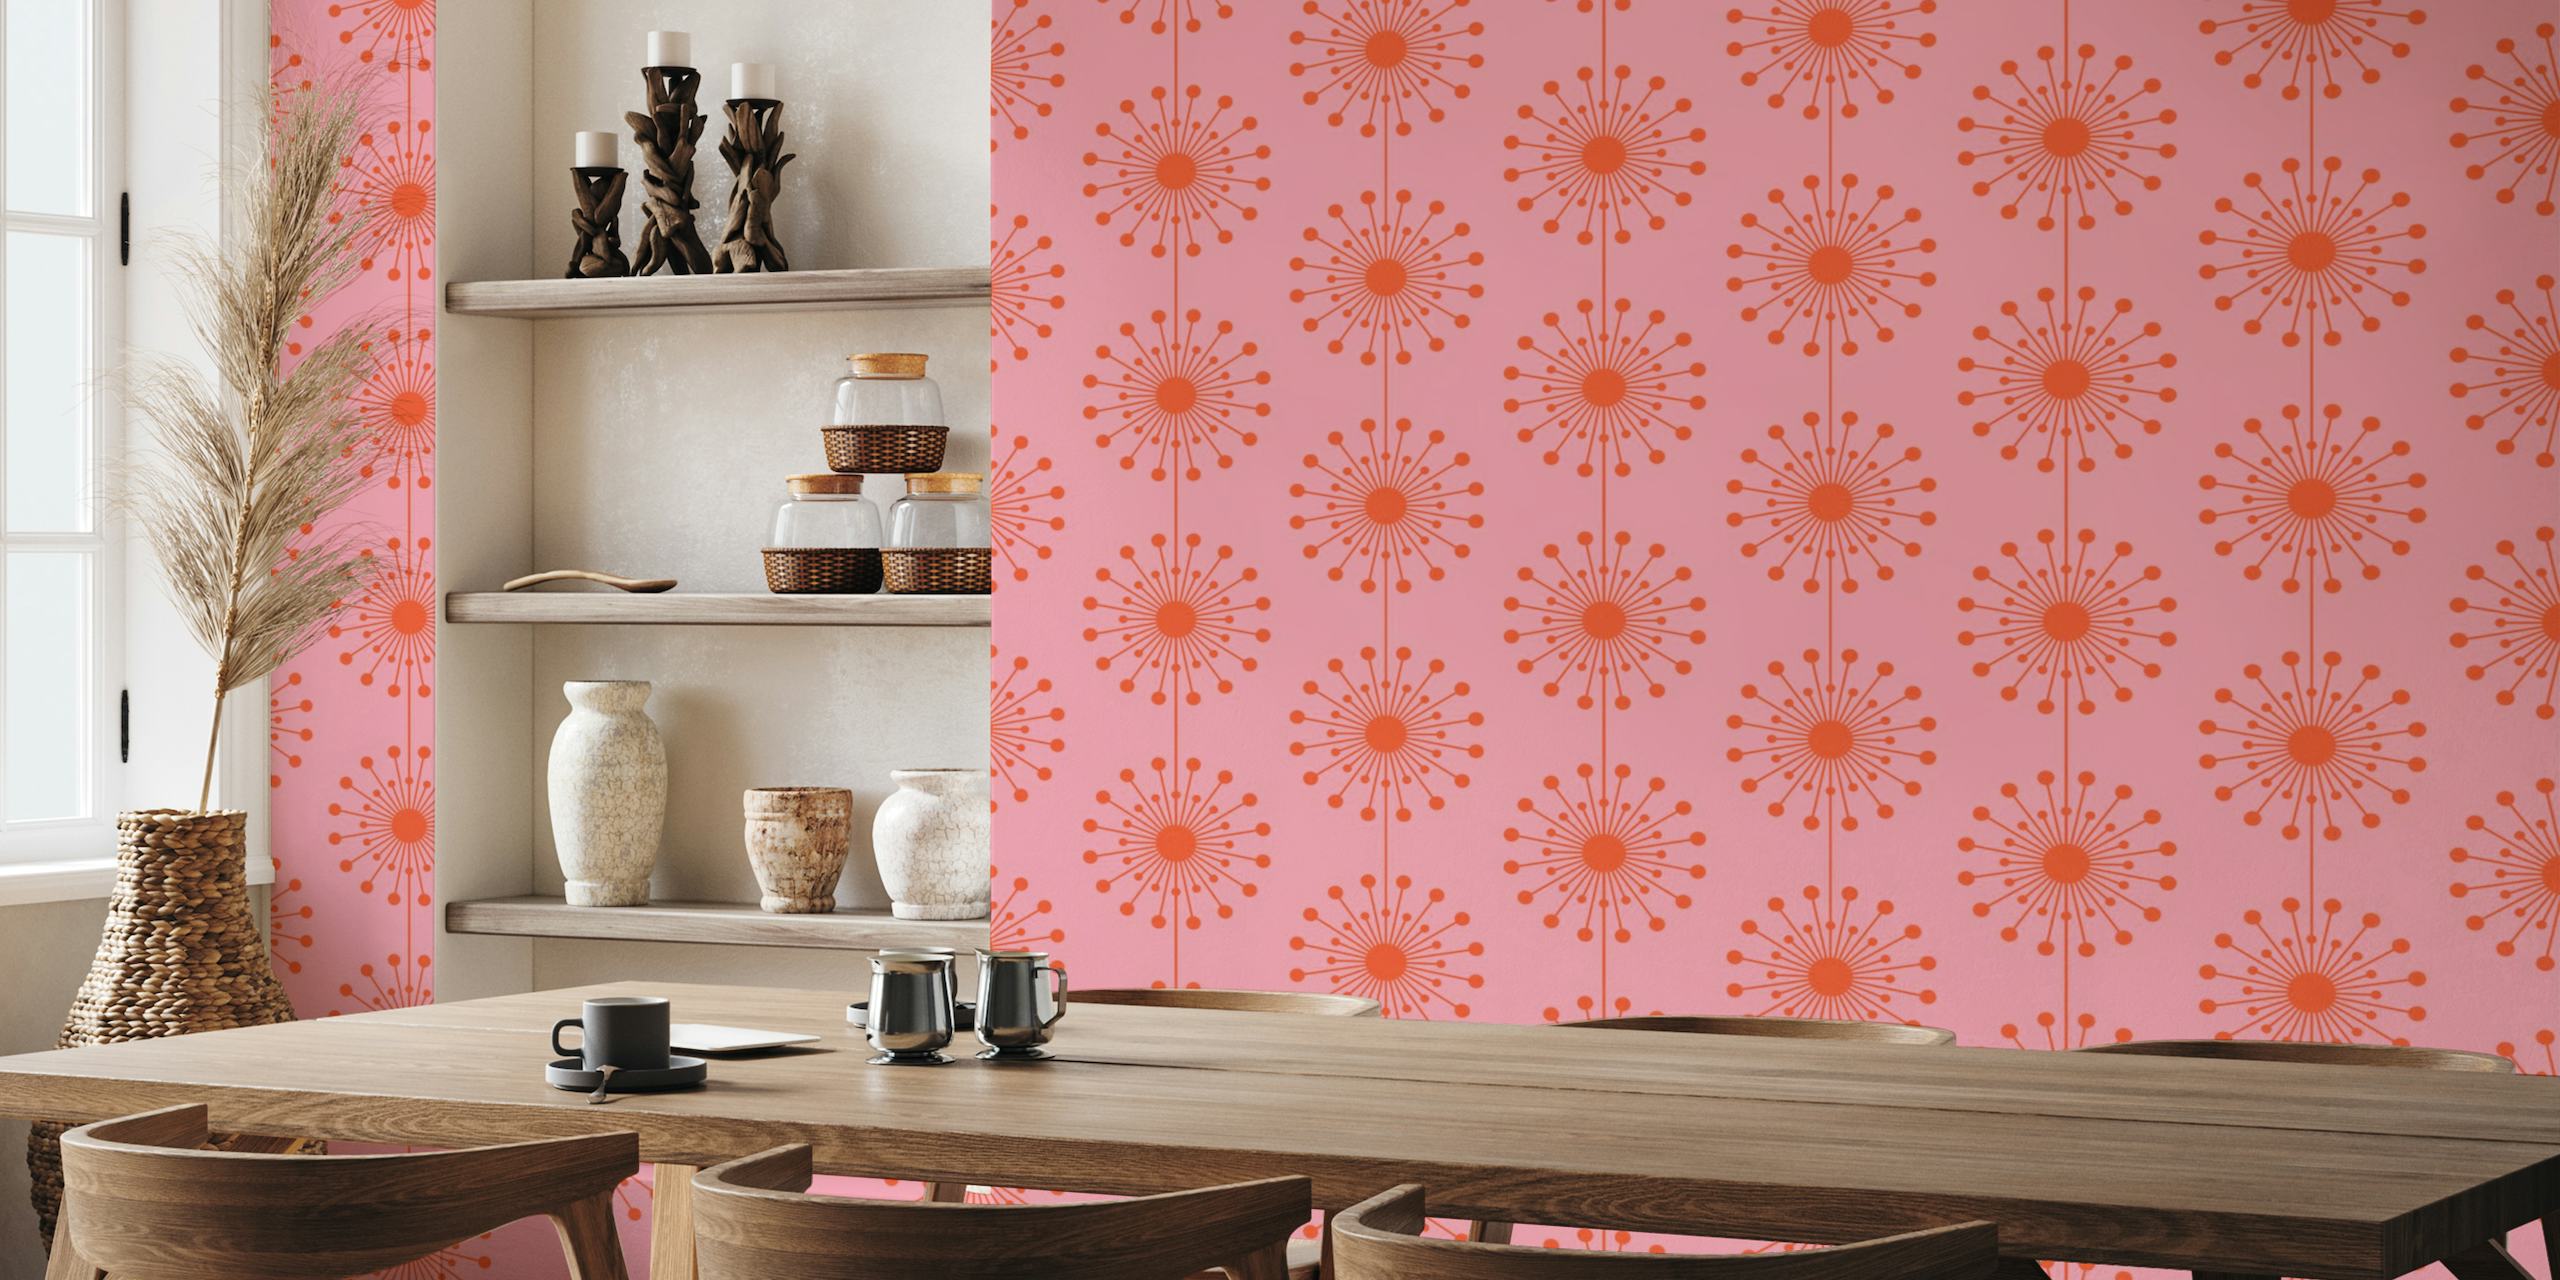 Midcentury moderni tyylinen voikukkakuvio vaaleanpunaisena ja oranssina seinämaalauksessa